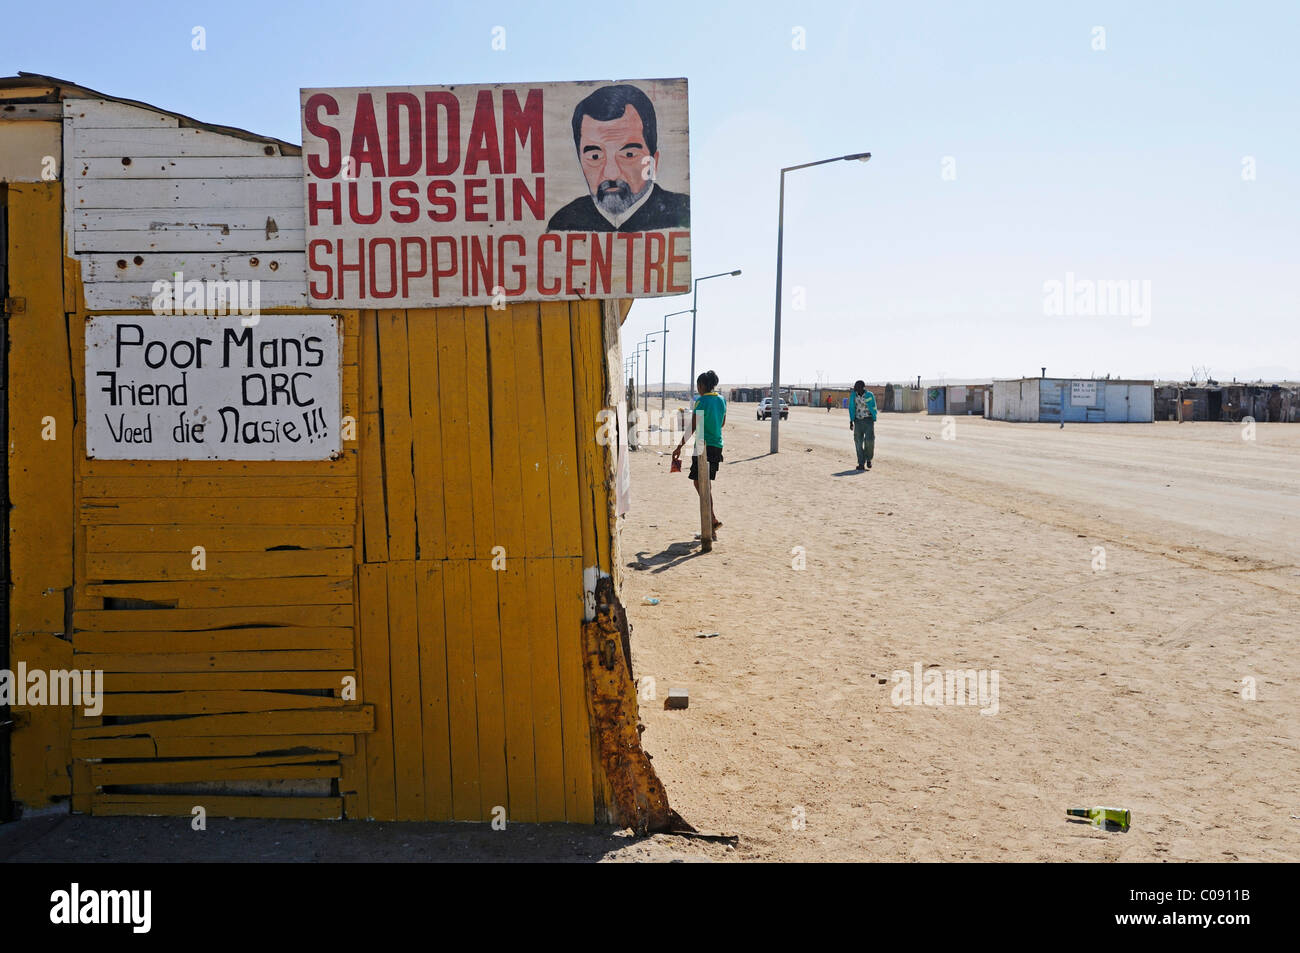 Saddam Hussein Einkaufszentrum Shop in Mondesa Township, Swakopmund Stadt, Namibia, Afrika Stockfoto